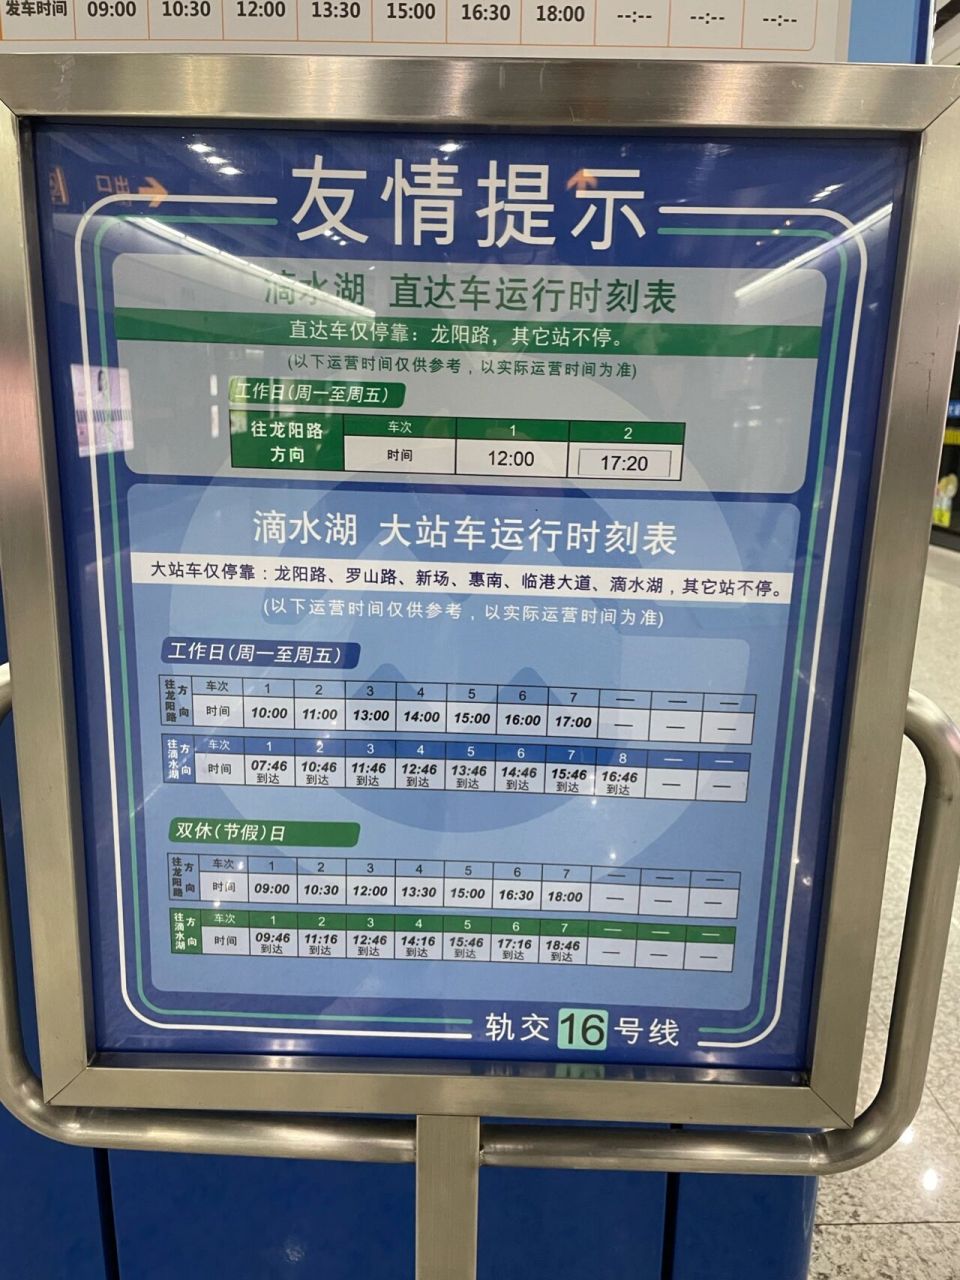 16号线大站车运行时间图片